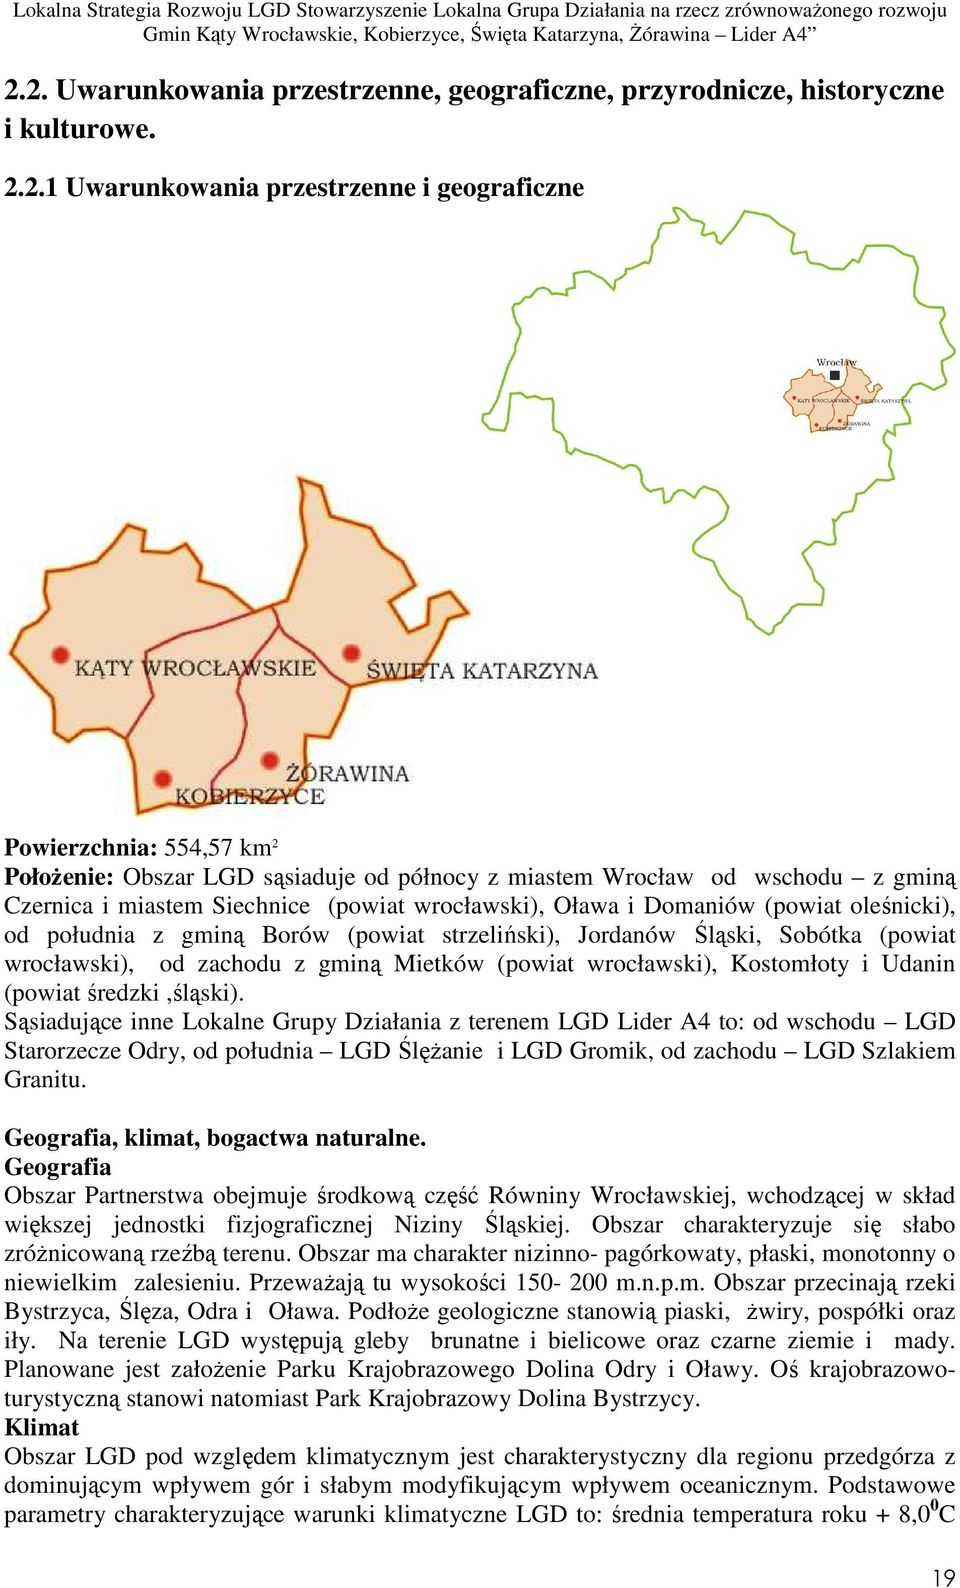 Sobótka (powiat wrocławski), od zachodu z gminą Mietków (powiat wrocławski), Kostomłoty i Udanin (powiat średzki,śląski).